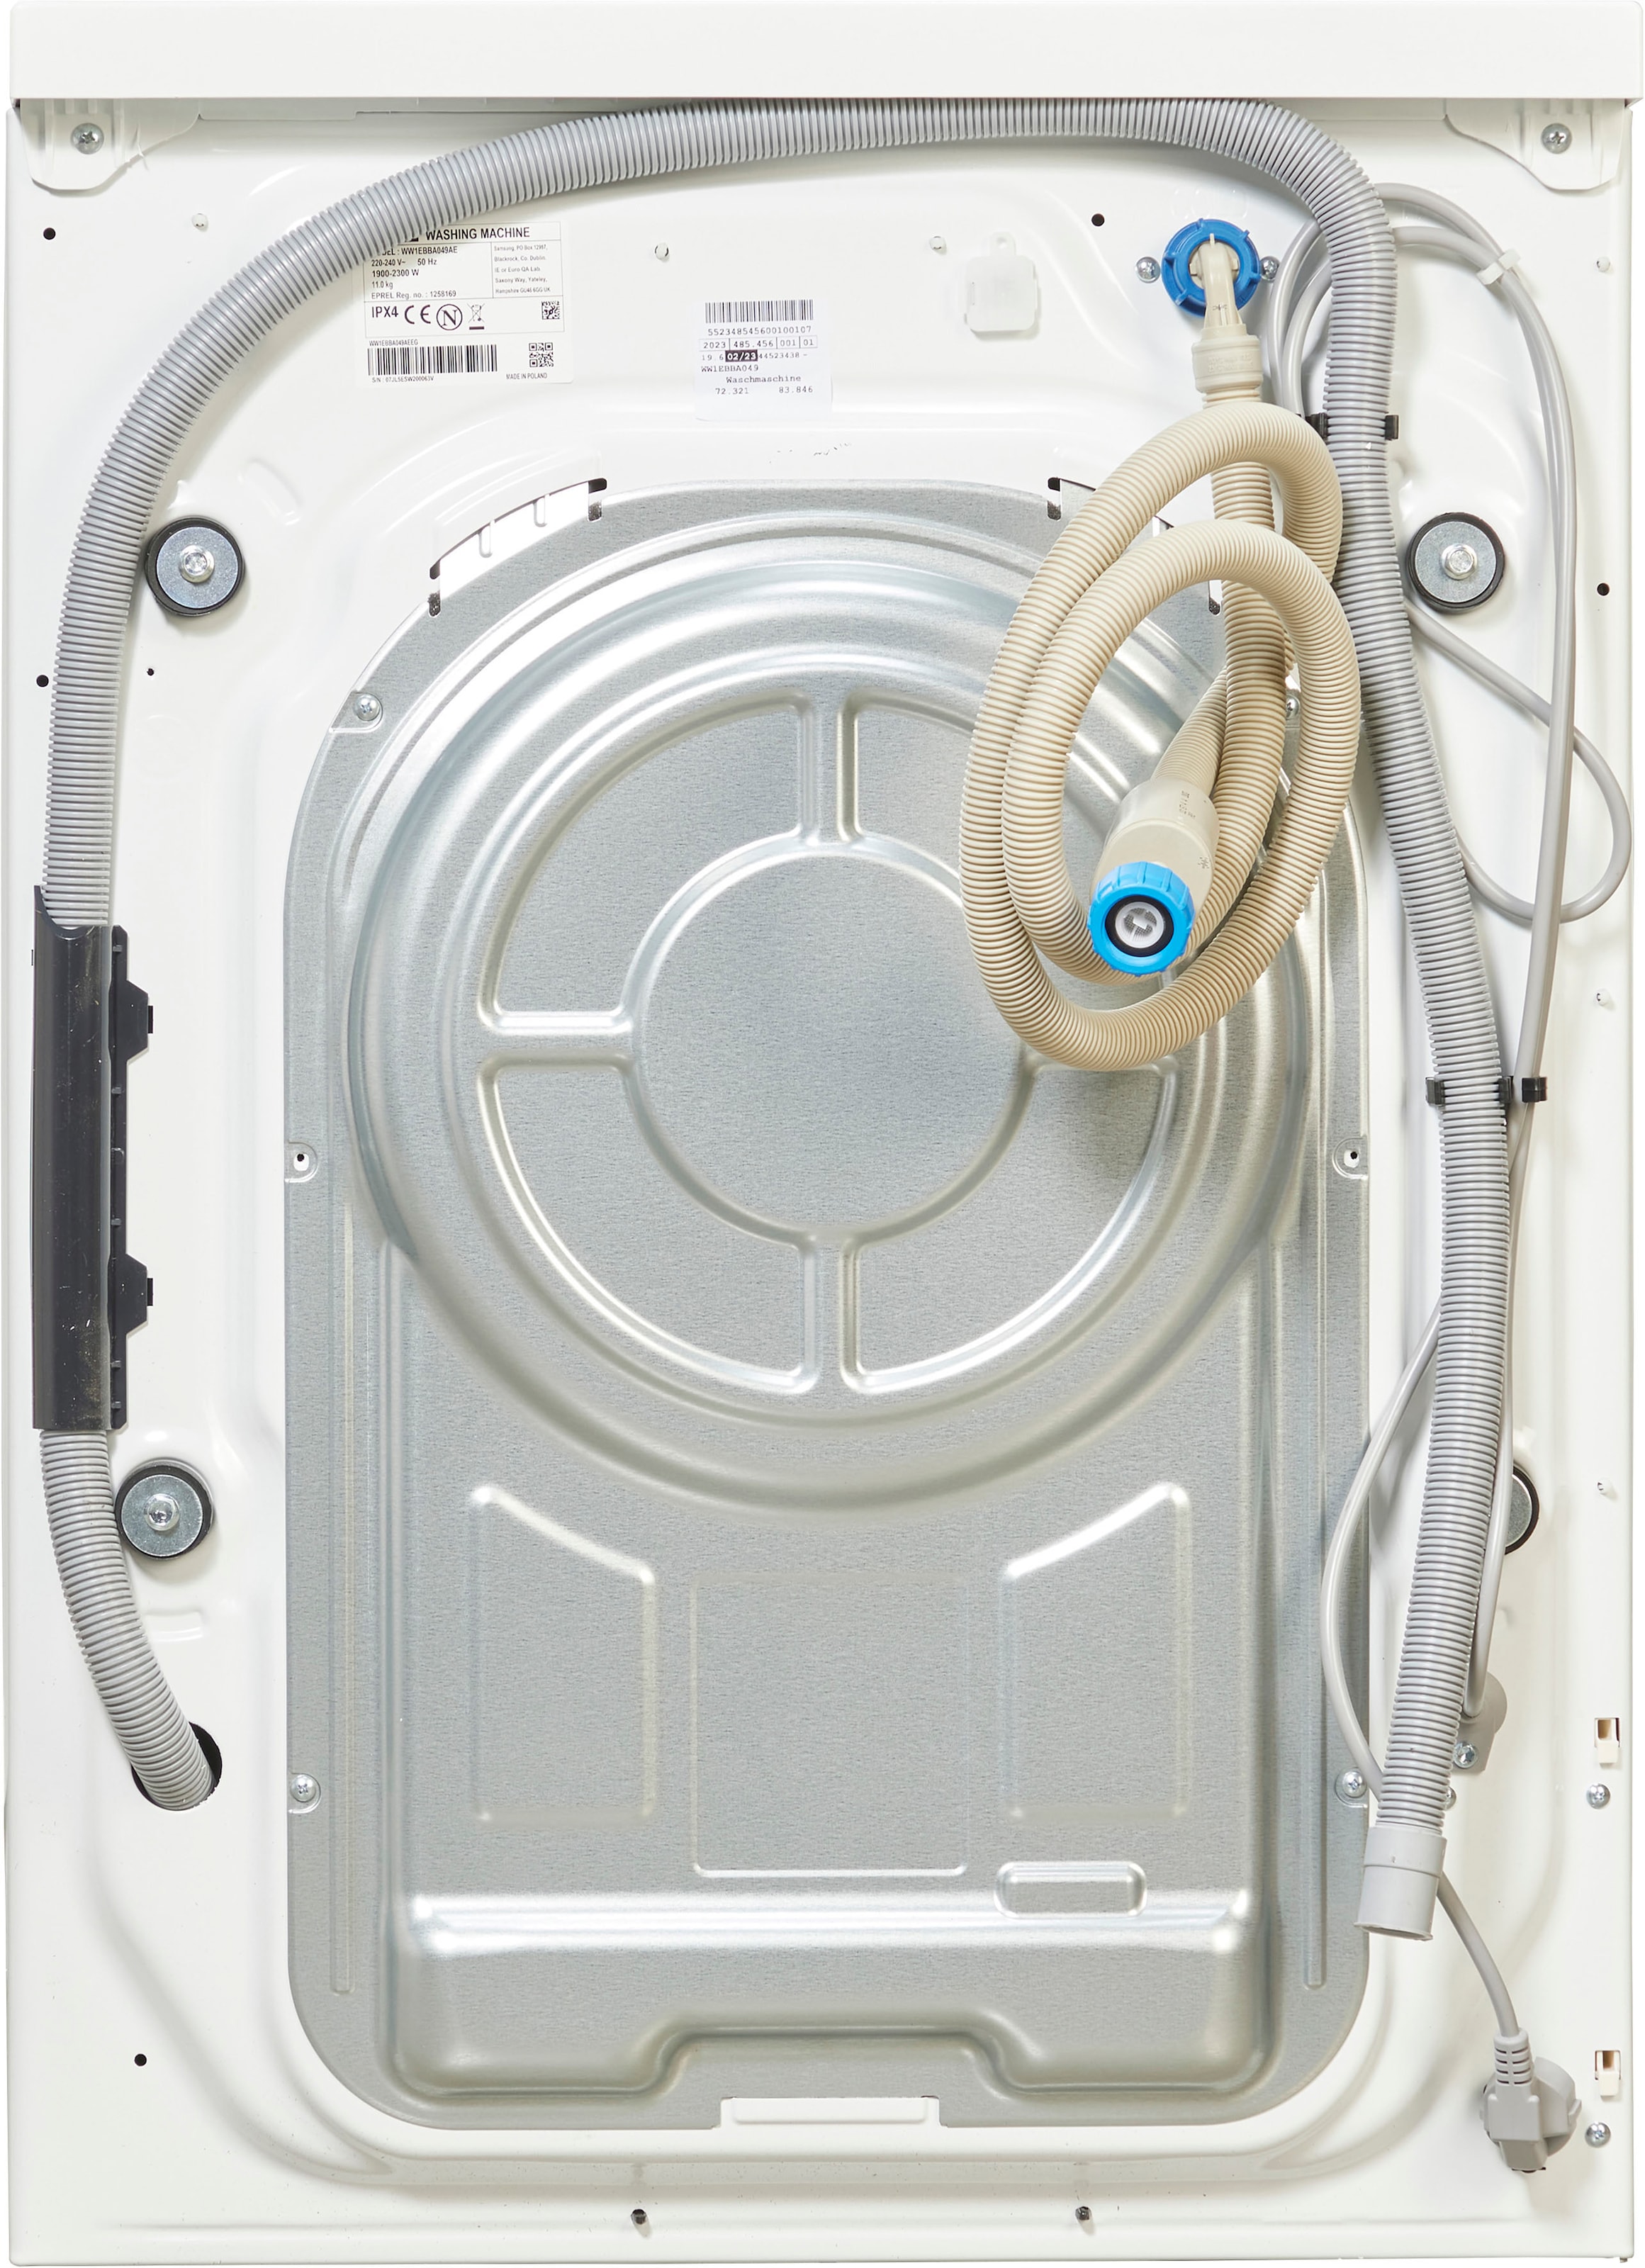 »WW1EBBA049AE«, kg, WW1EBBA049AE, U/min 11 Waschmaschine Samsung bestellen 1400 online